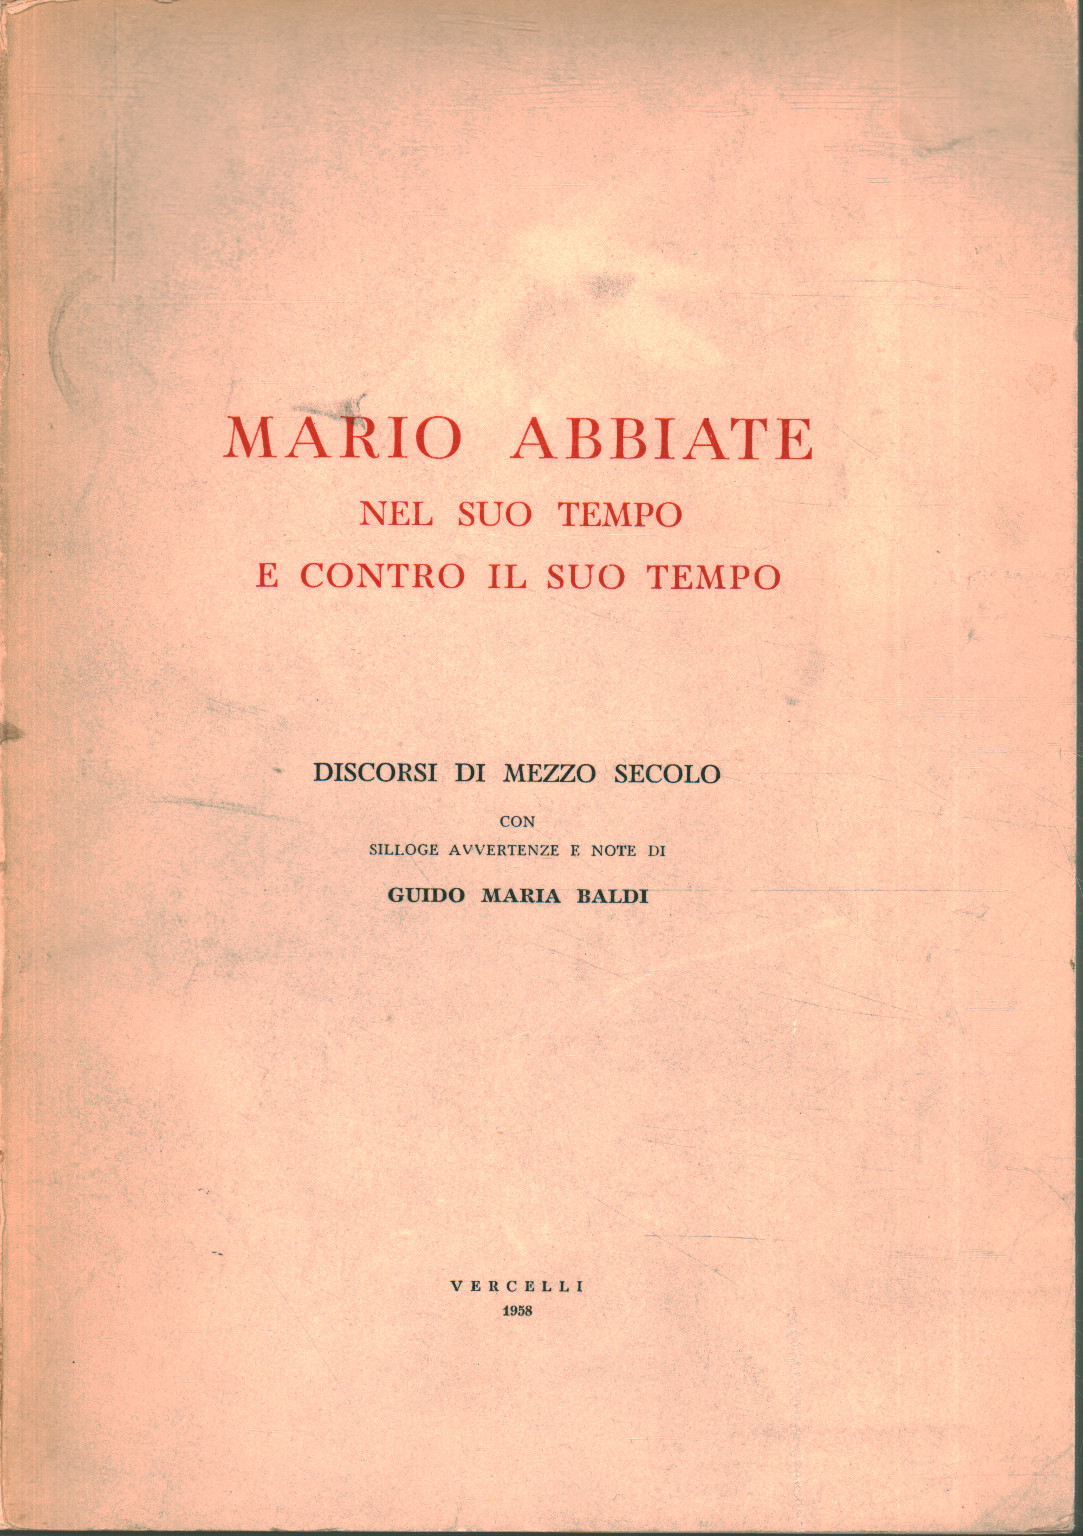 Mario Abbiate en su tiempo y contra su tiempo, Guido Maria Baldi